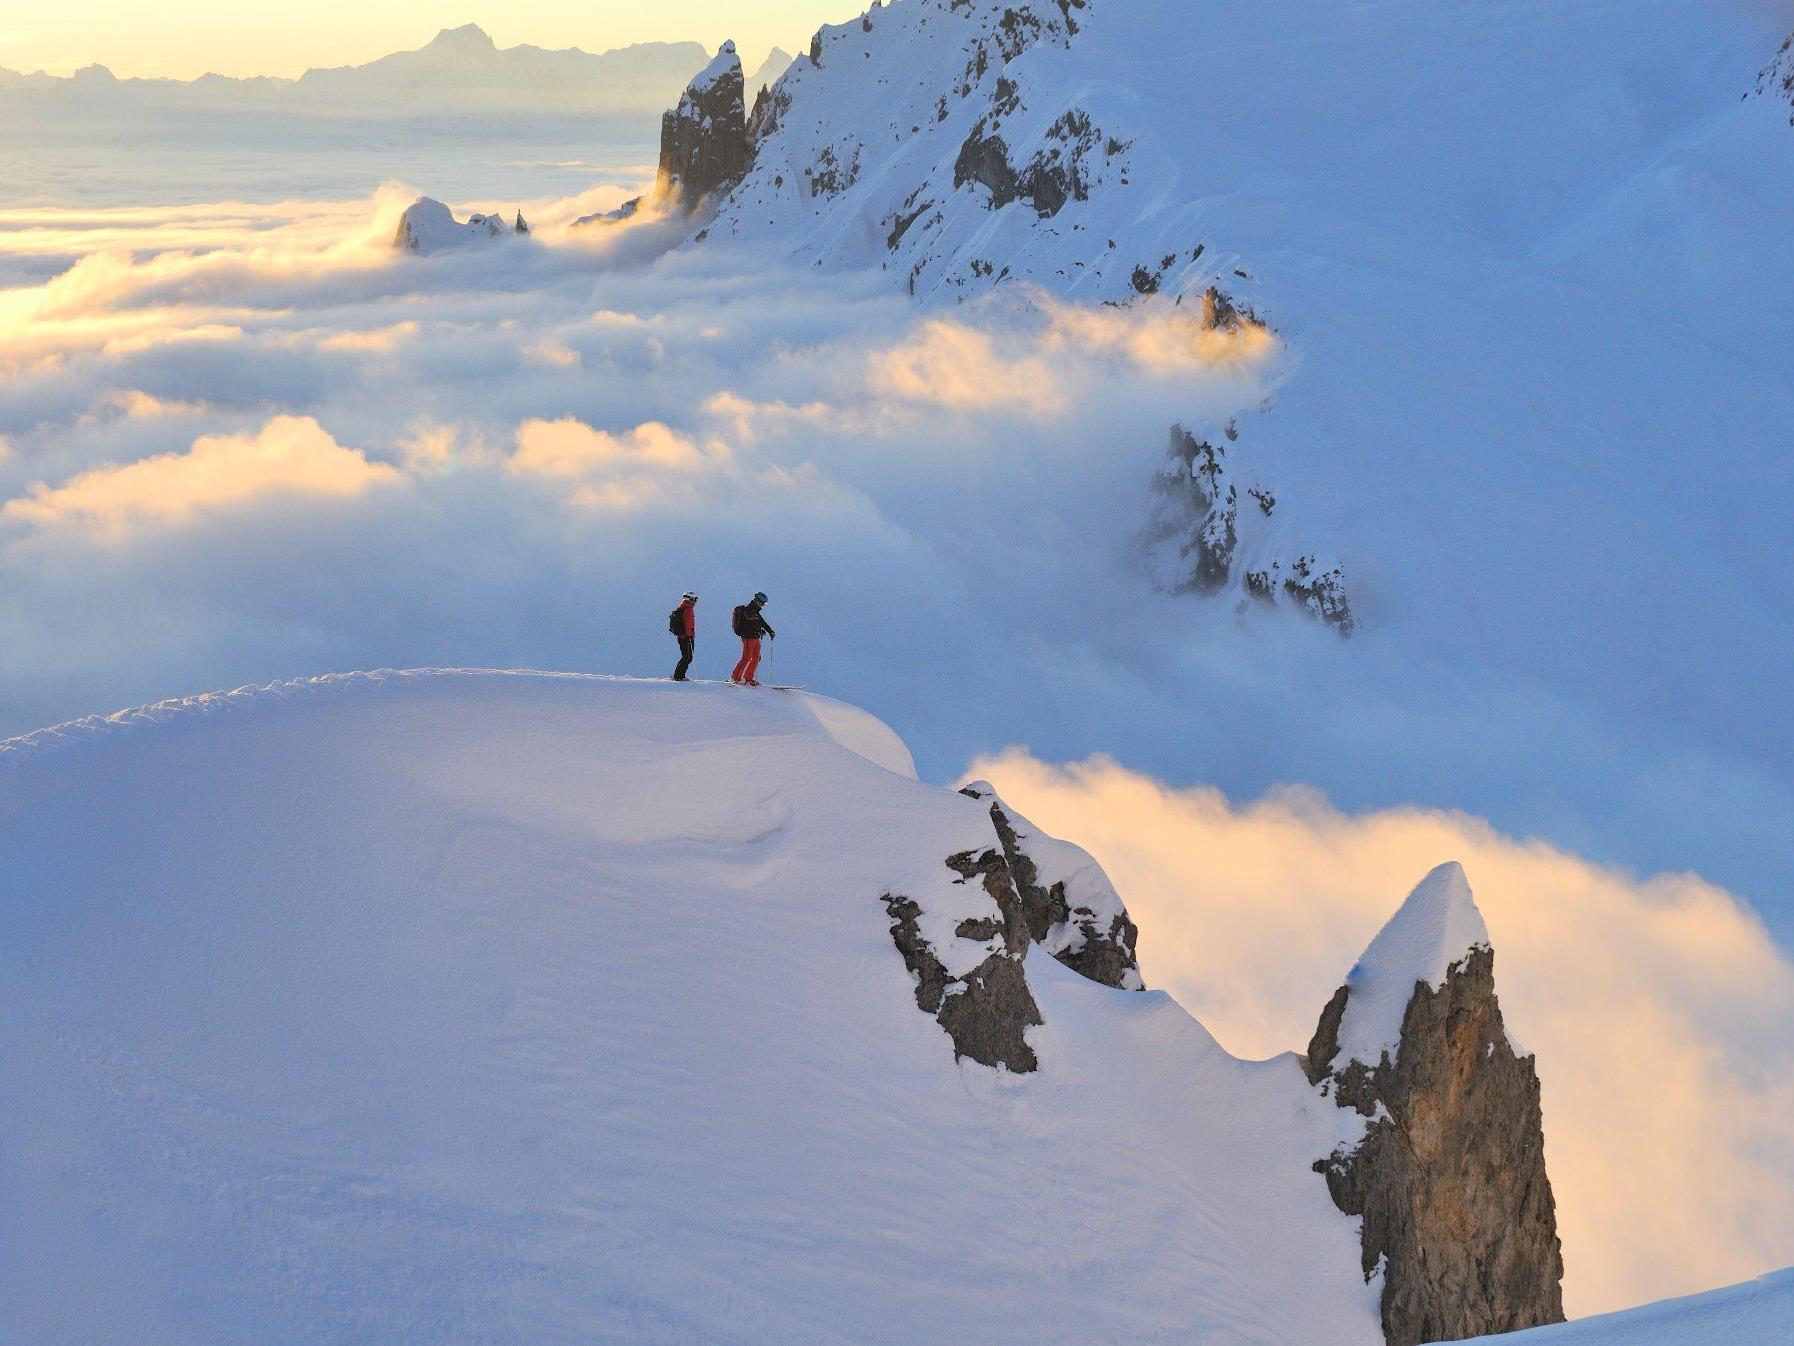 Die Faszination des alpinen Tiefschneefahrens liegt darin, früh aufzustehen, der Erste auf dem Berg zu sein.